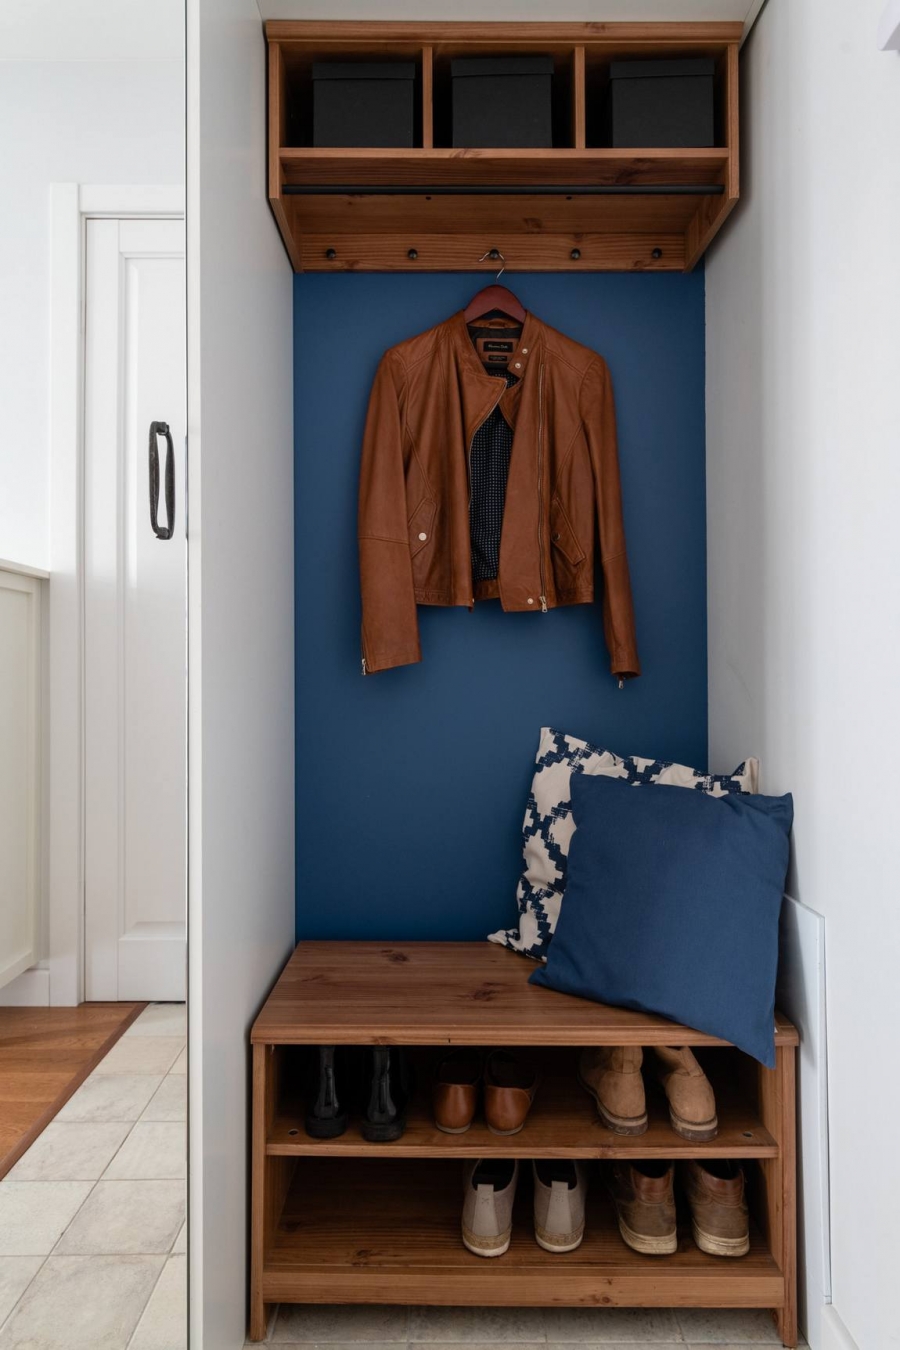 Lối vào căn hộ tận dụng hốc tường để bố trí kệ đựng giày dép, móc treo áo khoác, kệ lưu trữ trên cao và đặc biệt là gam màu xanh lam đã xuất hiện từ cái nhìn đầu tiên.